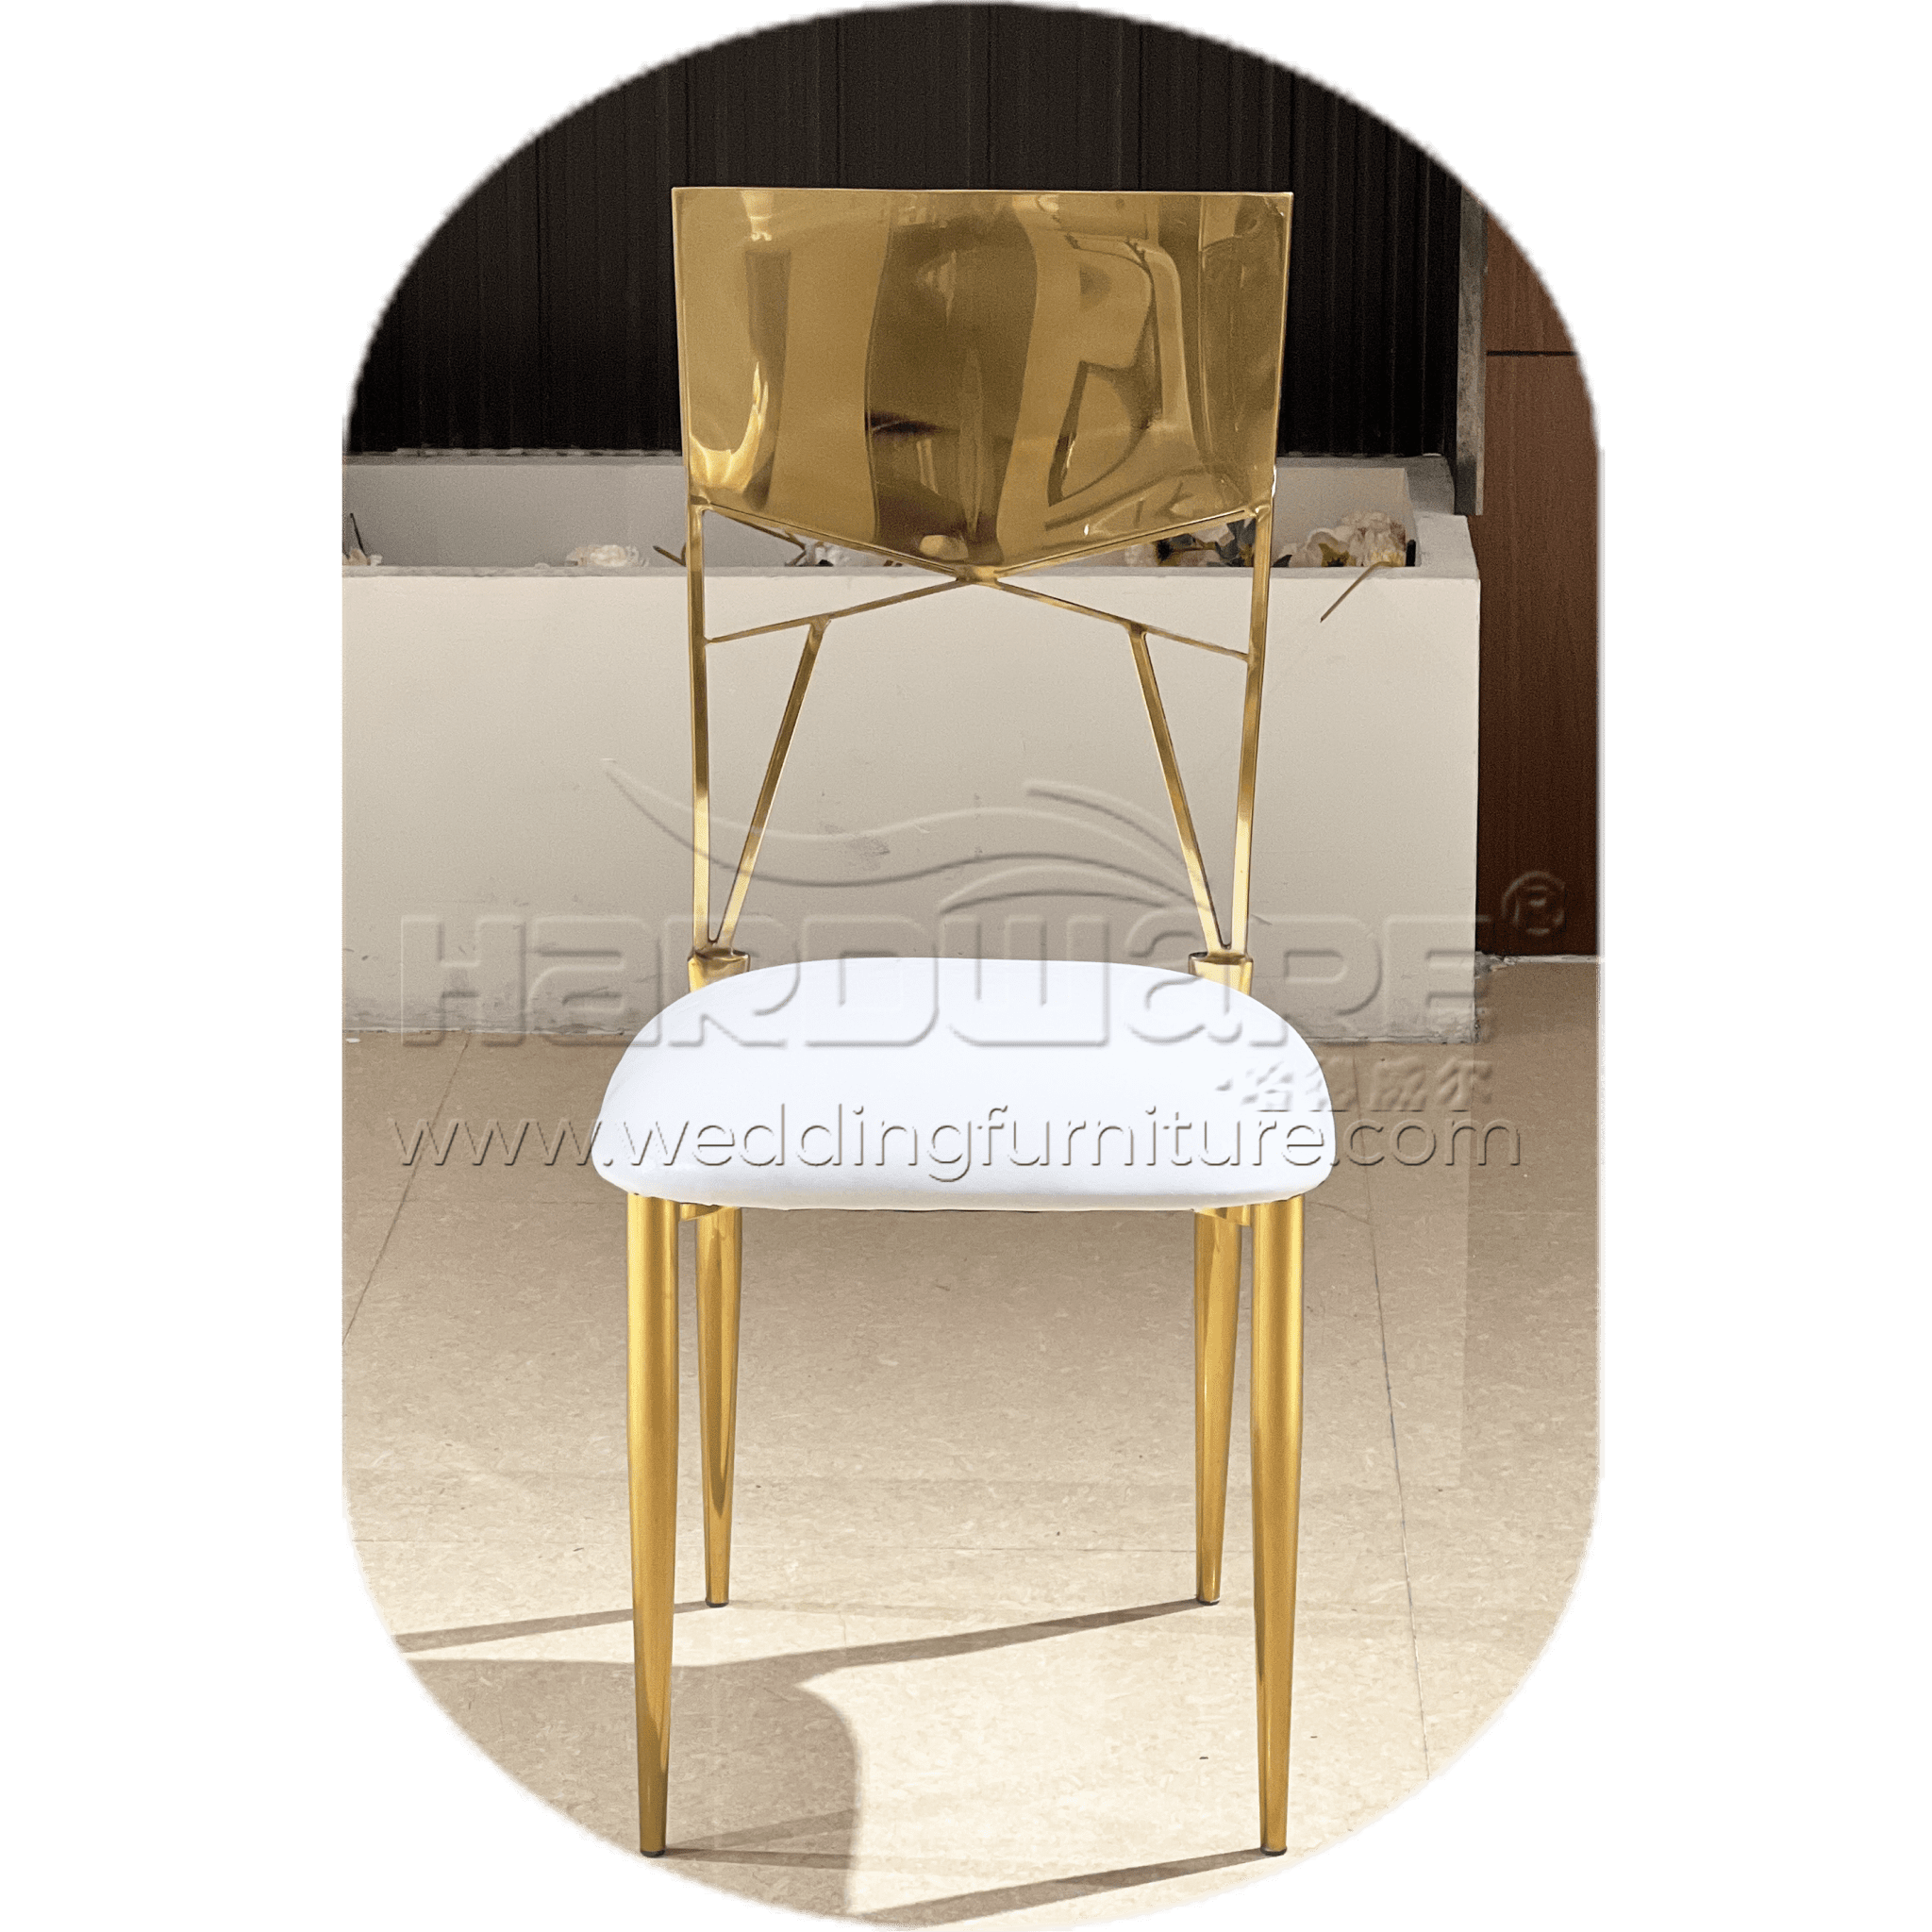 Gervine wedding chair